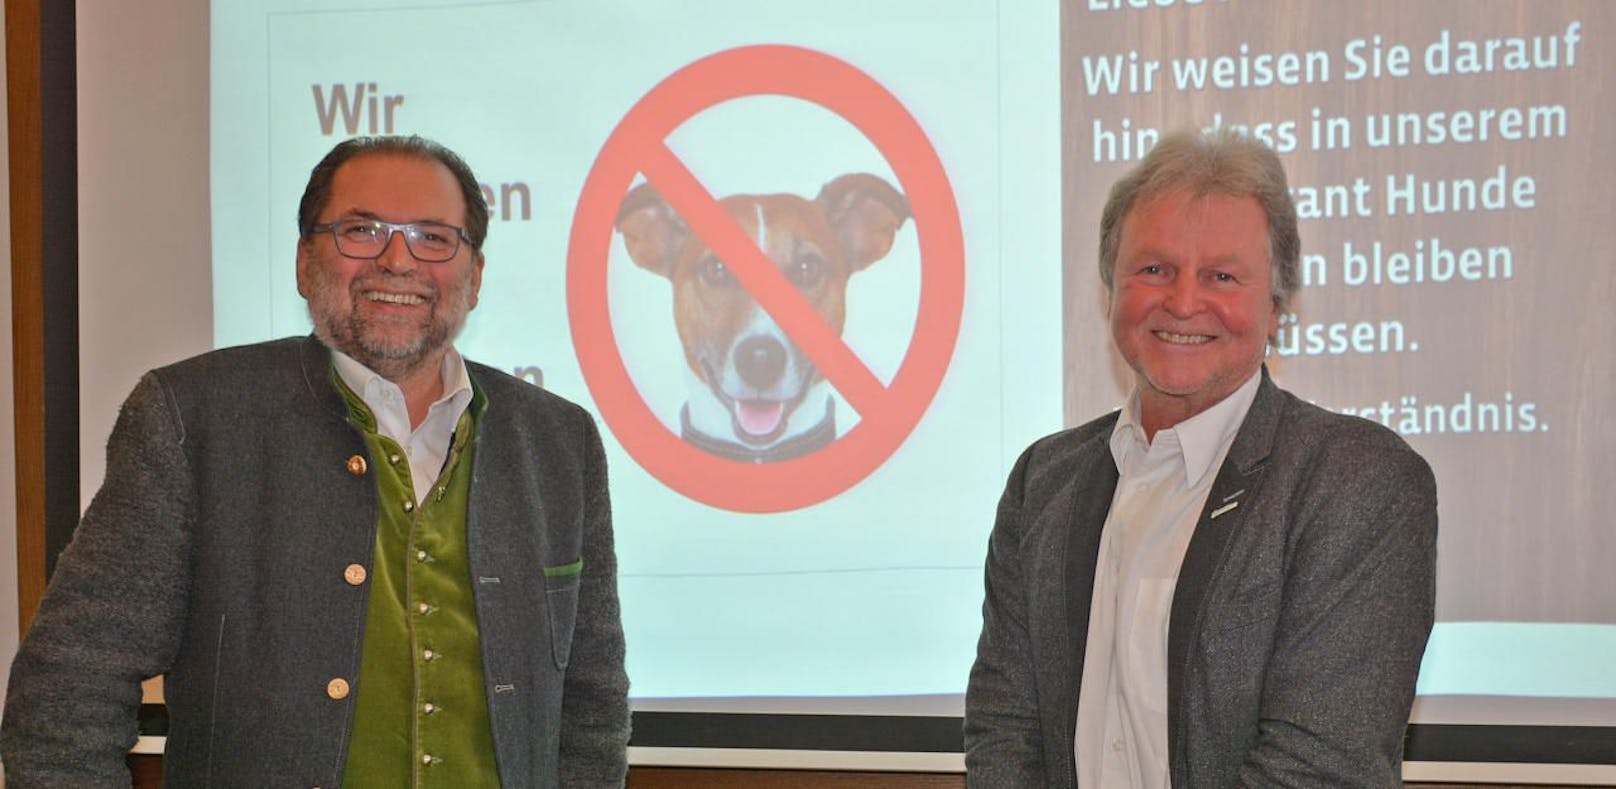 Wirt Helmut Satzinger und Brauchef Ewald Pöschko (re.) verteidigen das Hundeverbot.